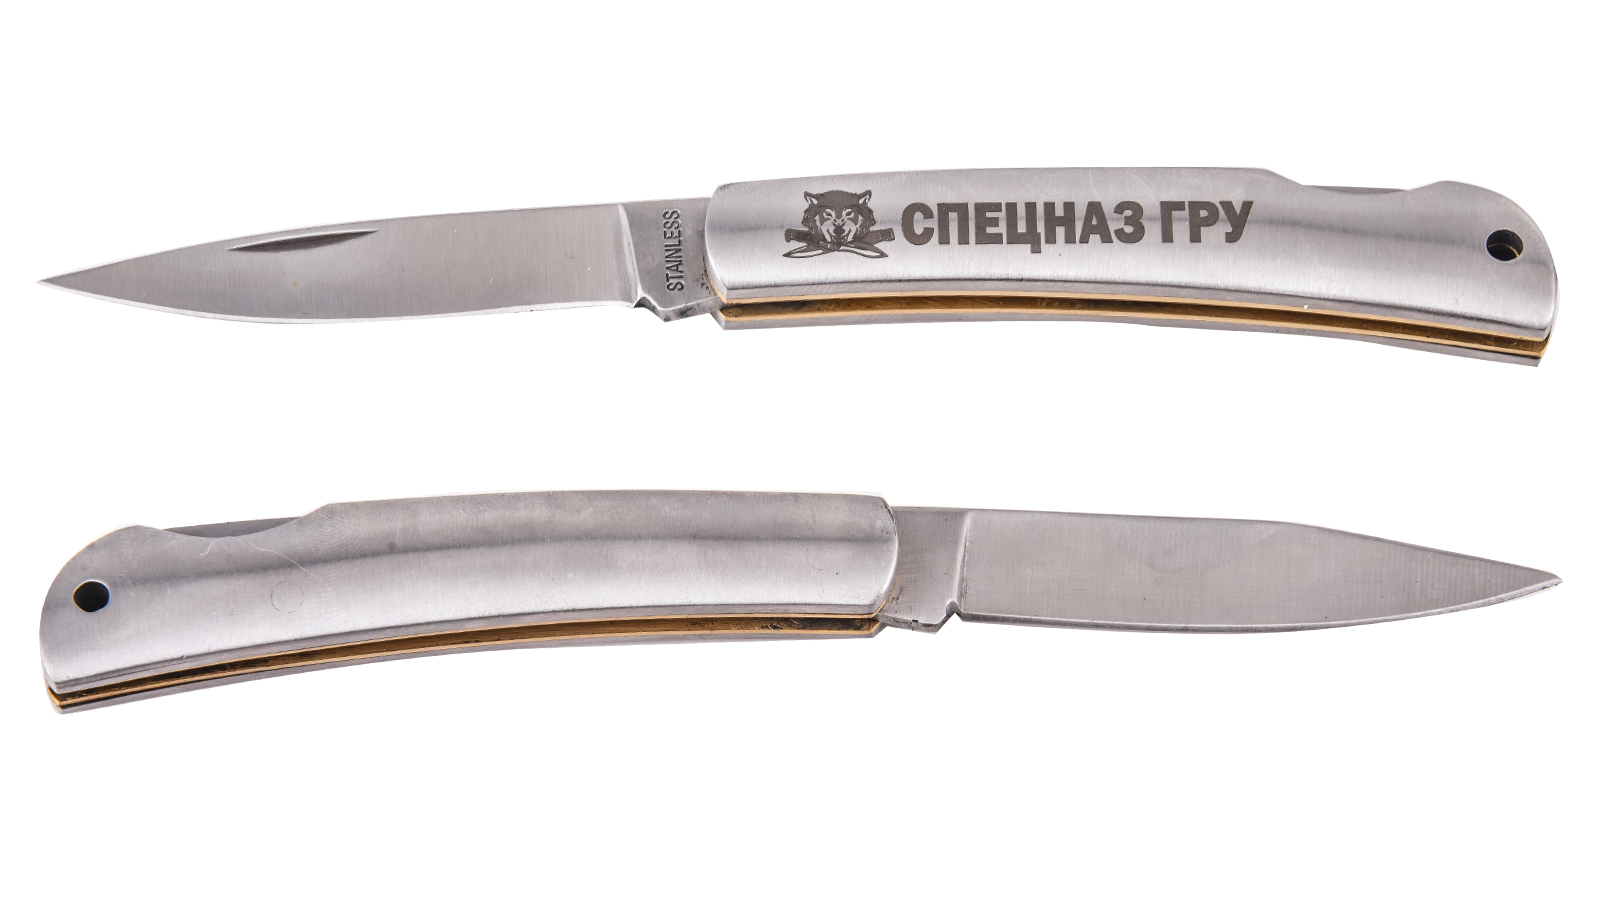 Коллекционный складной нож Спецназа ГРУ от Военпро